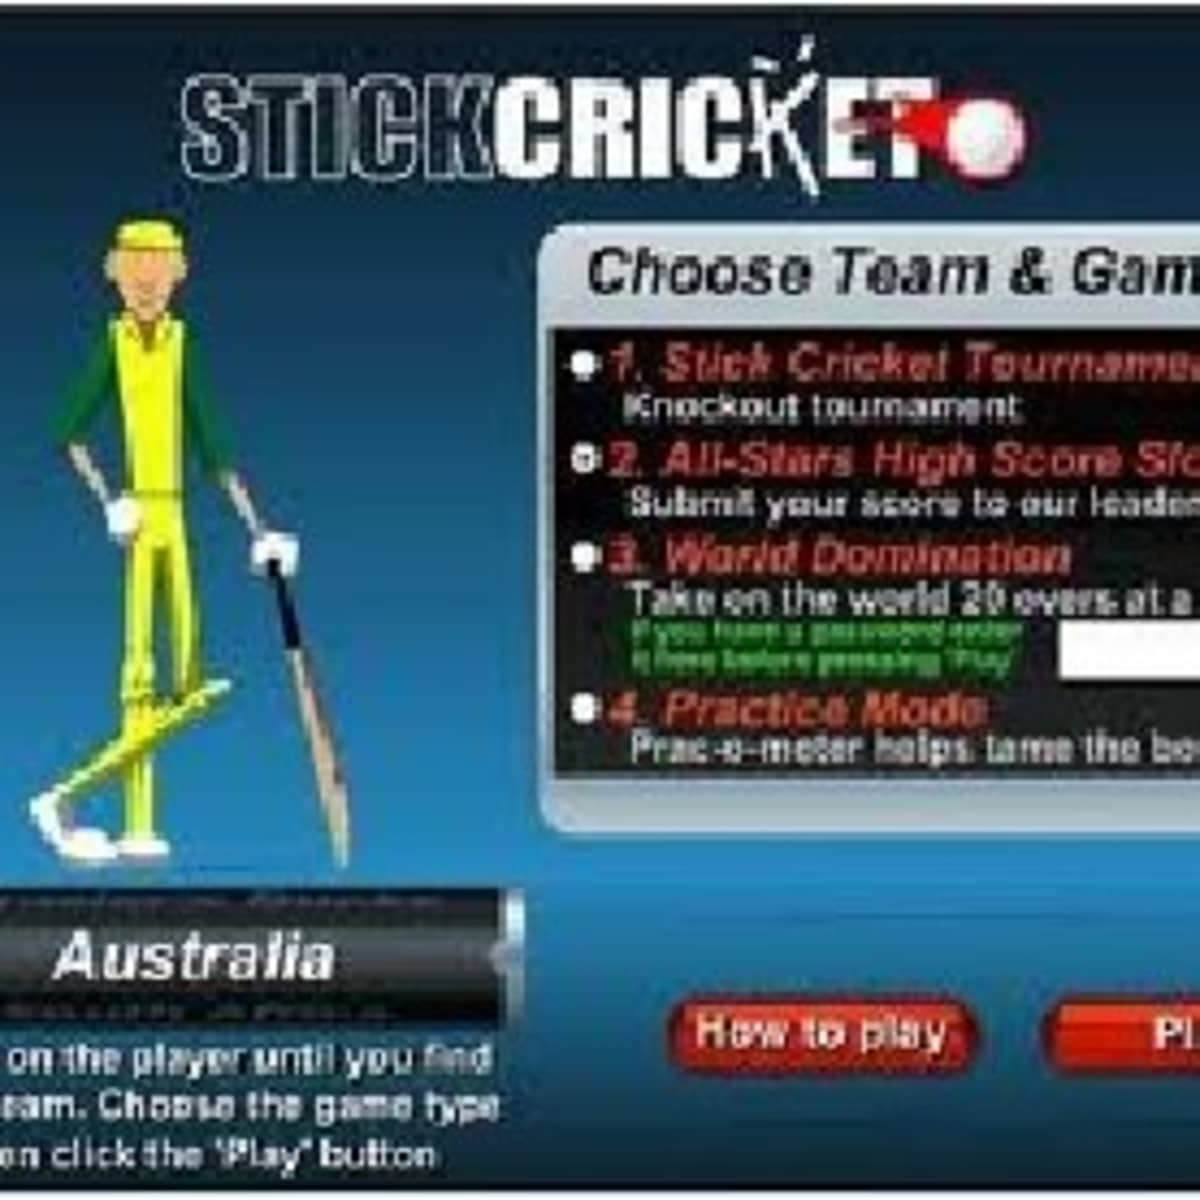 CLICK STICK jogo online gratuito em